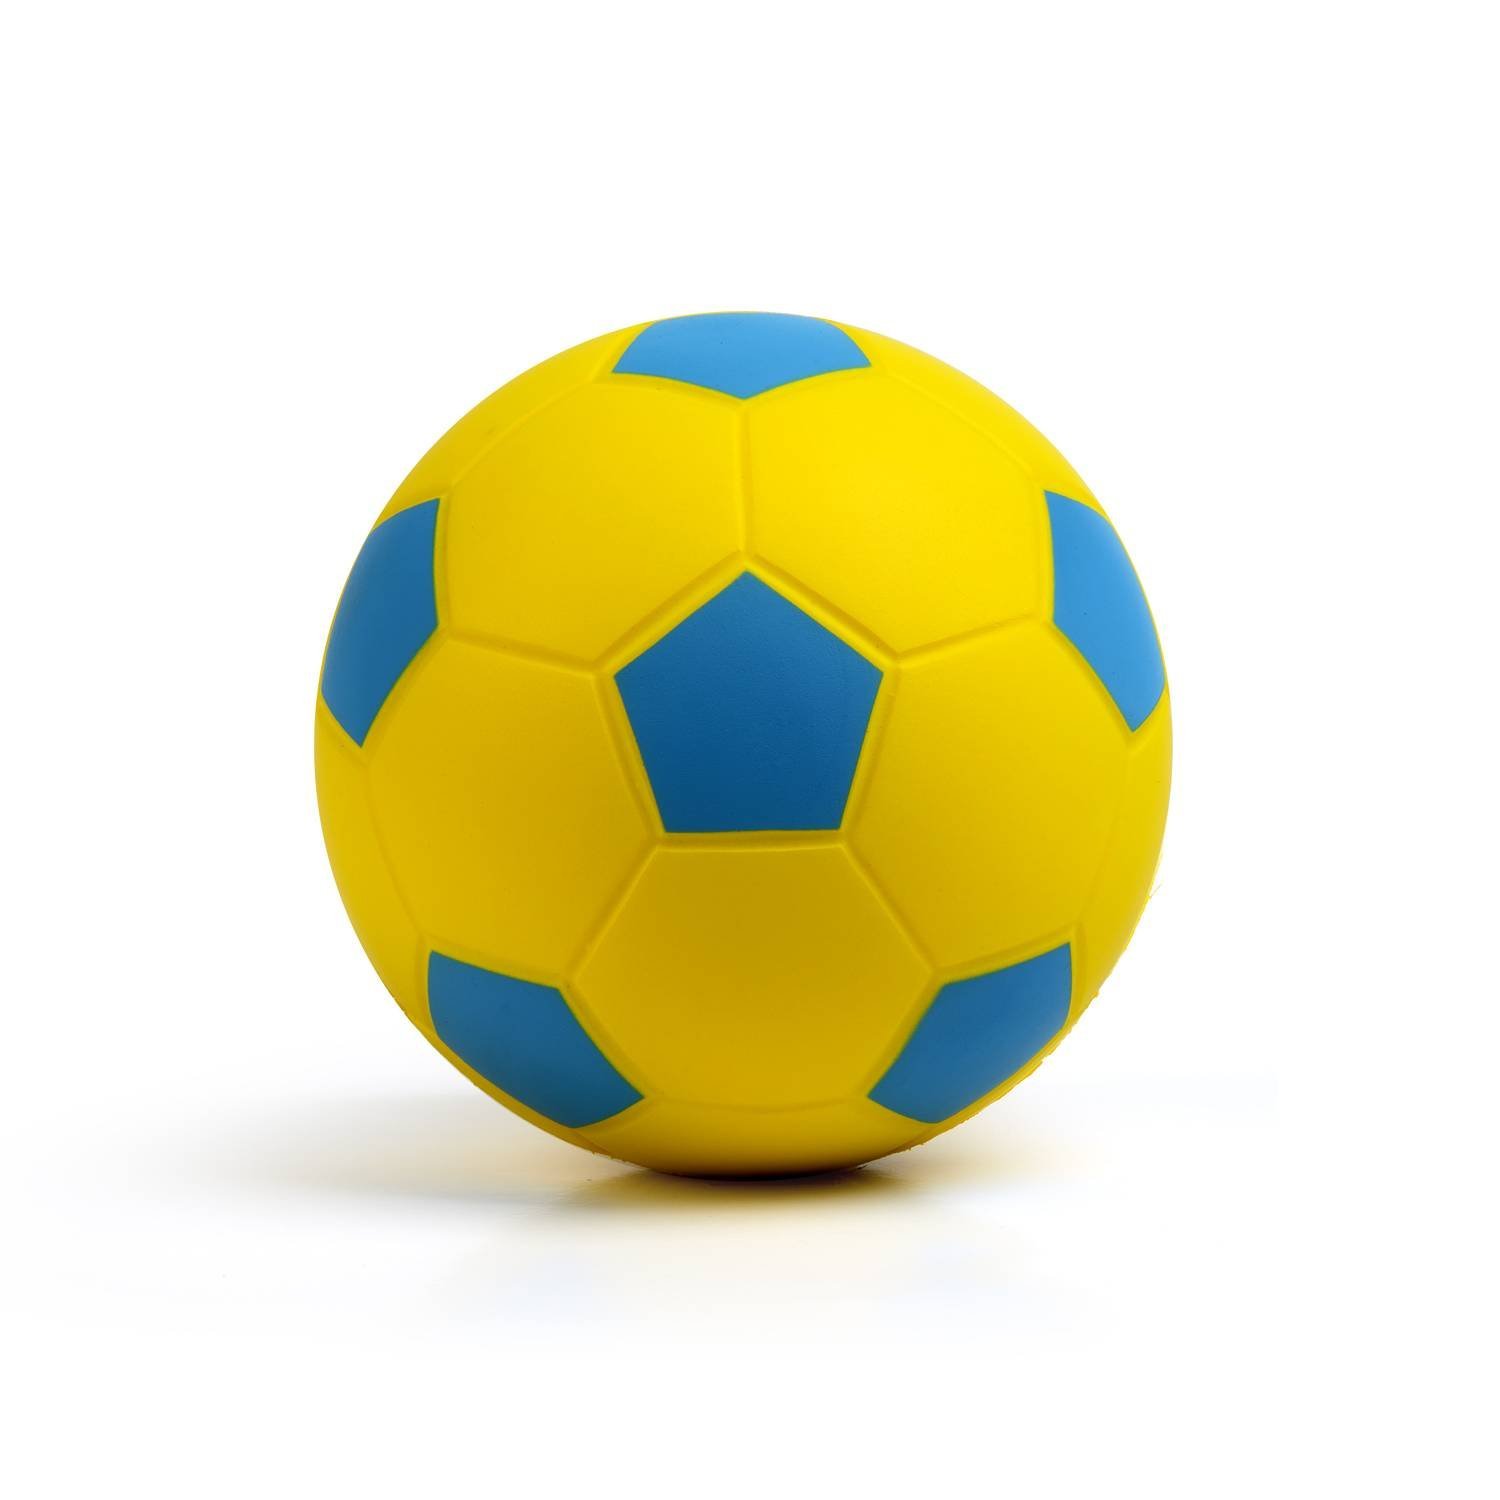 Картинка мяча для детей на прозрачном фоне. Мячик. Мяч для детей. Мячики для детей. Мячик на белом фоне.